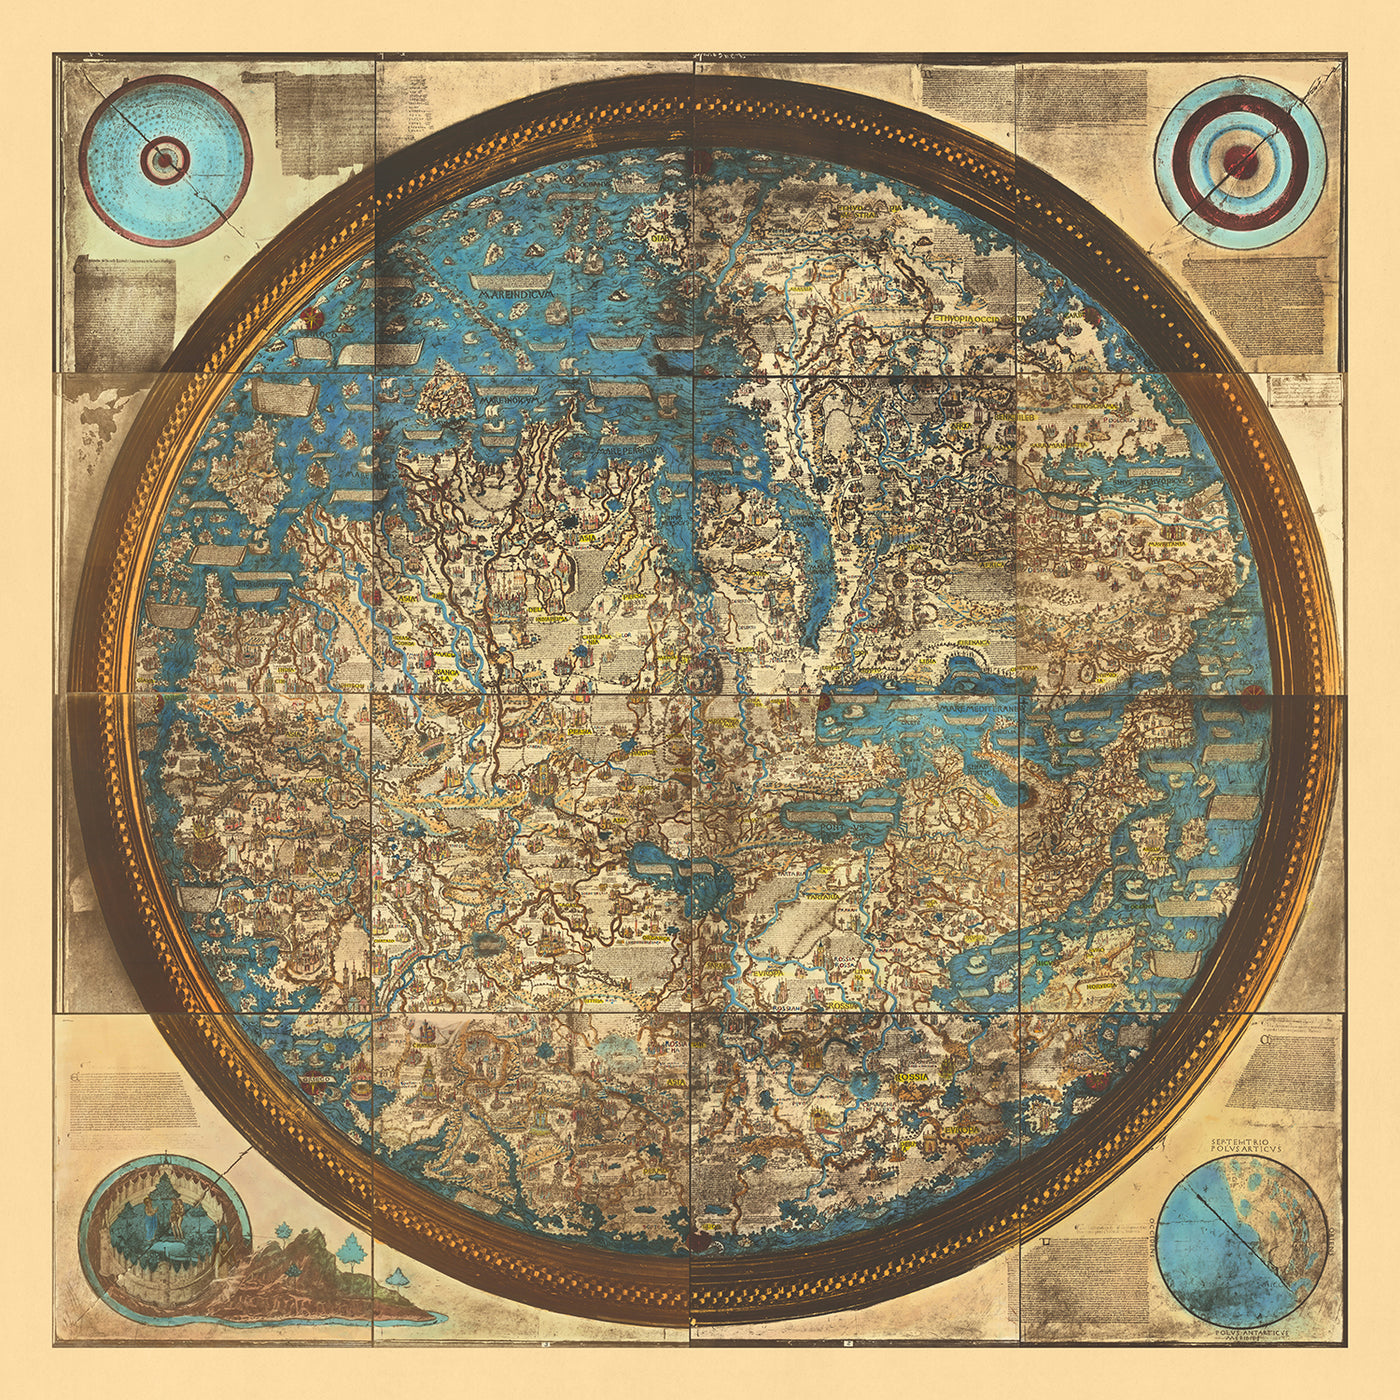 Alte Weltkarte der Welt von Fra Mauro, 1450: Gedruckte Reproduktion, geozentrische Projektion, mittelalterliche Mappa Mundi